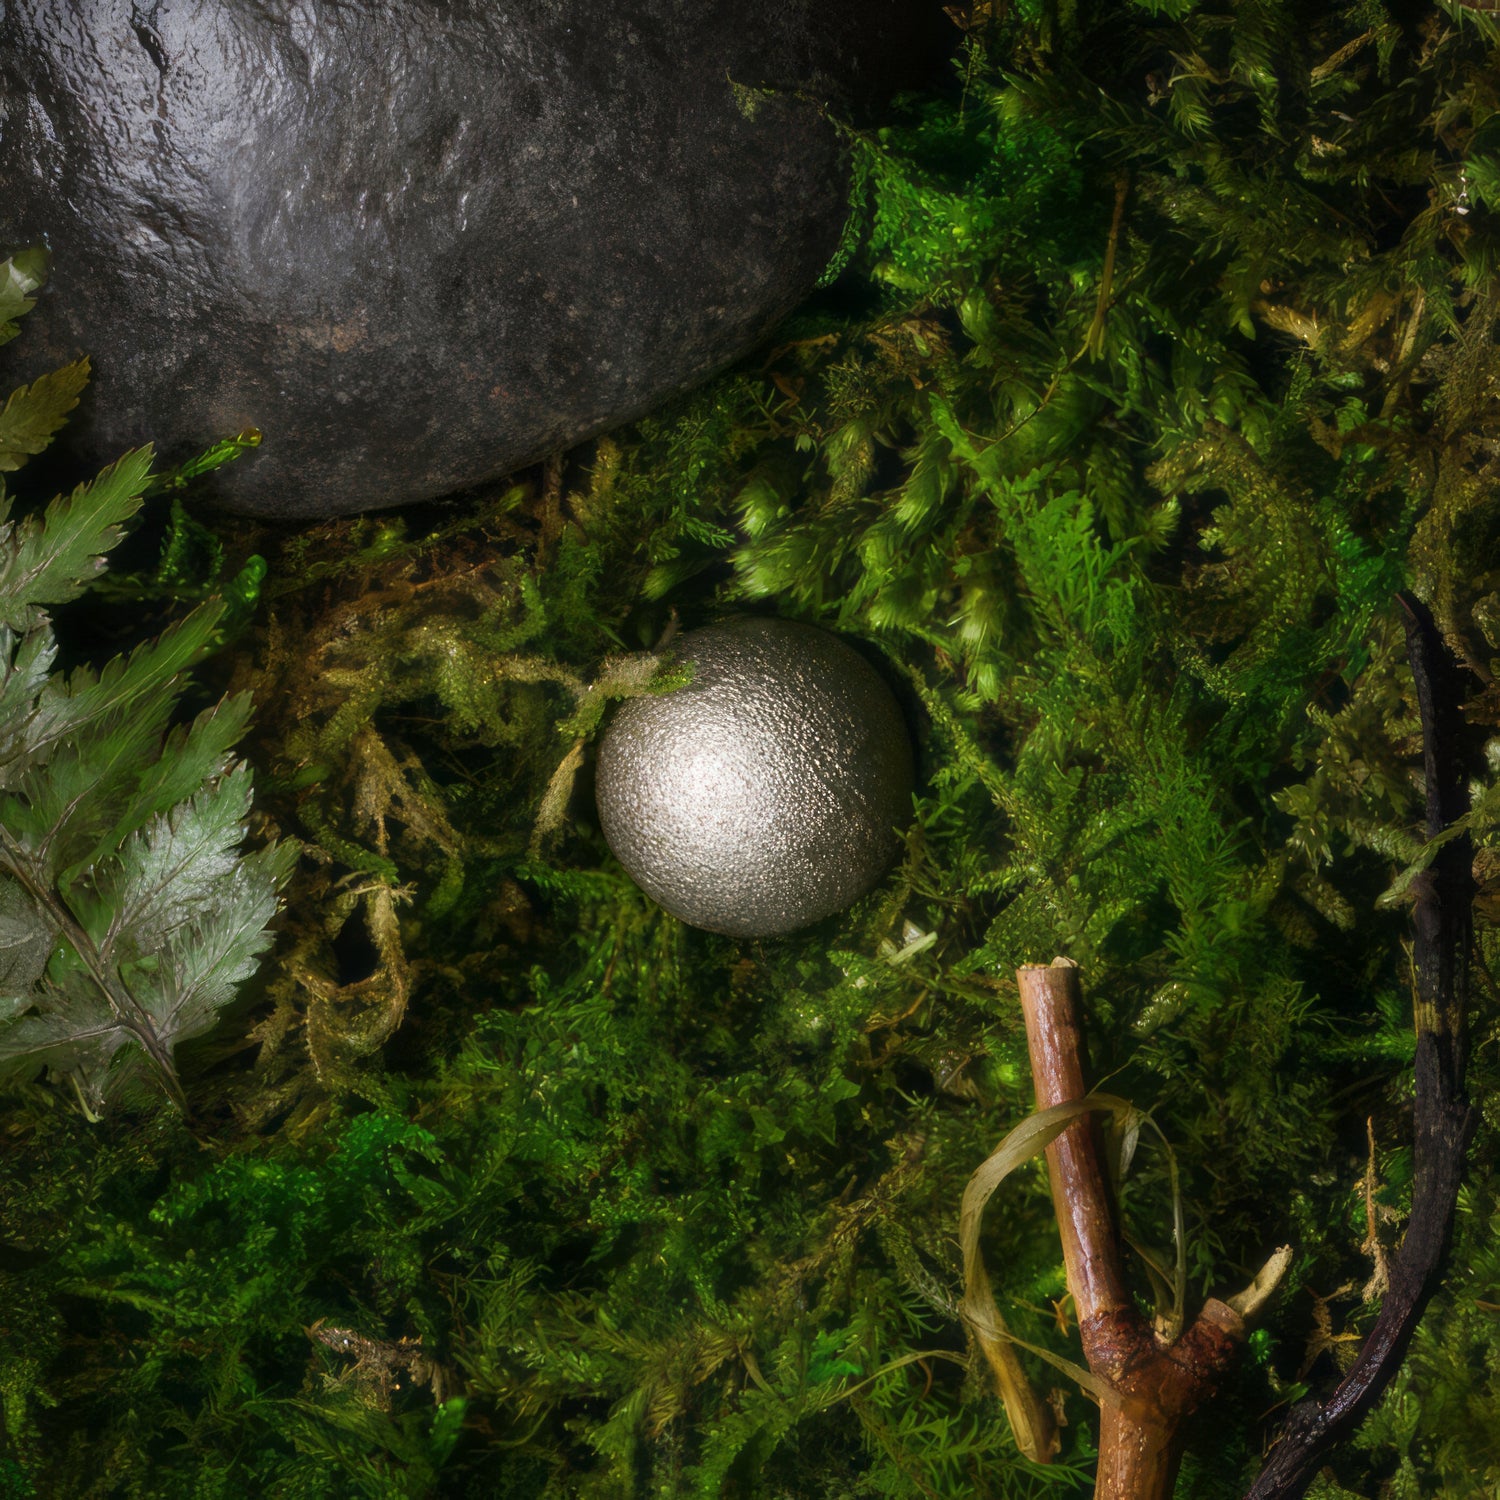 Nickel Alloy Soul Sphere on moss